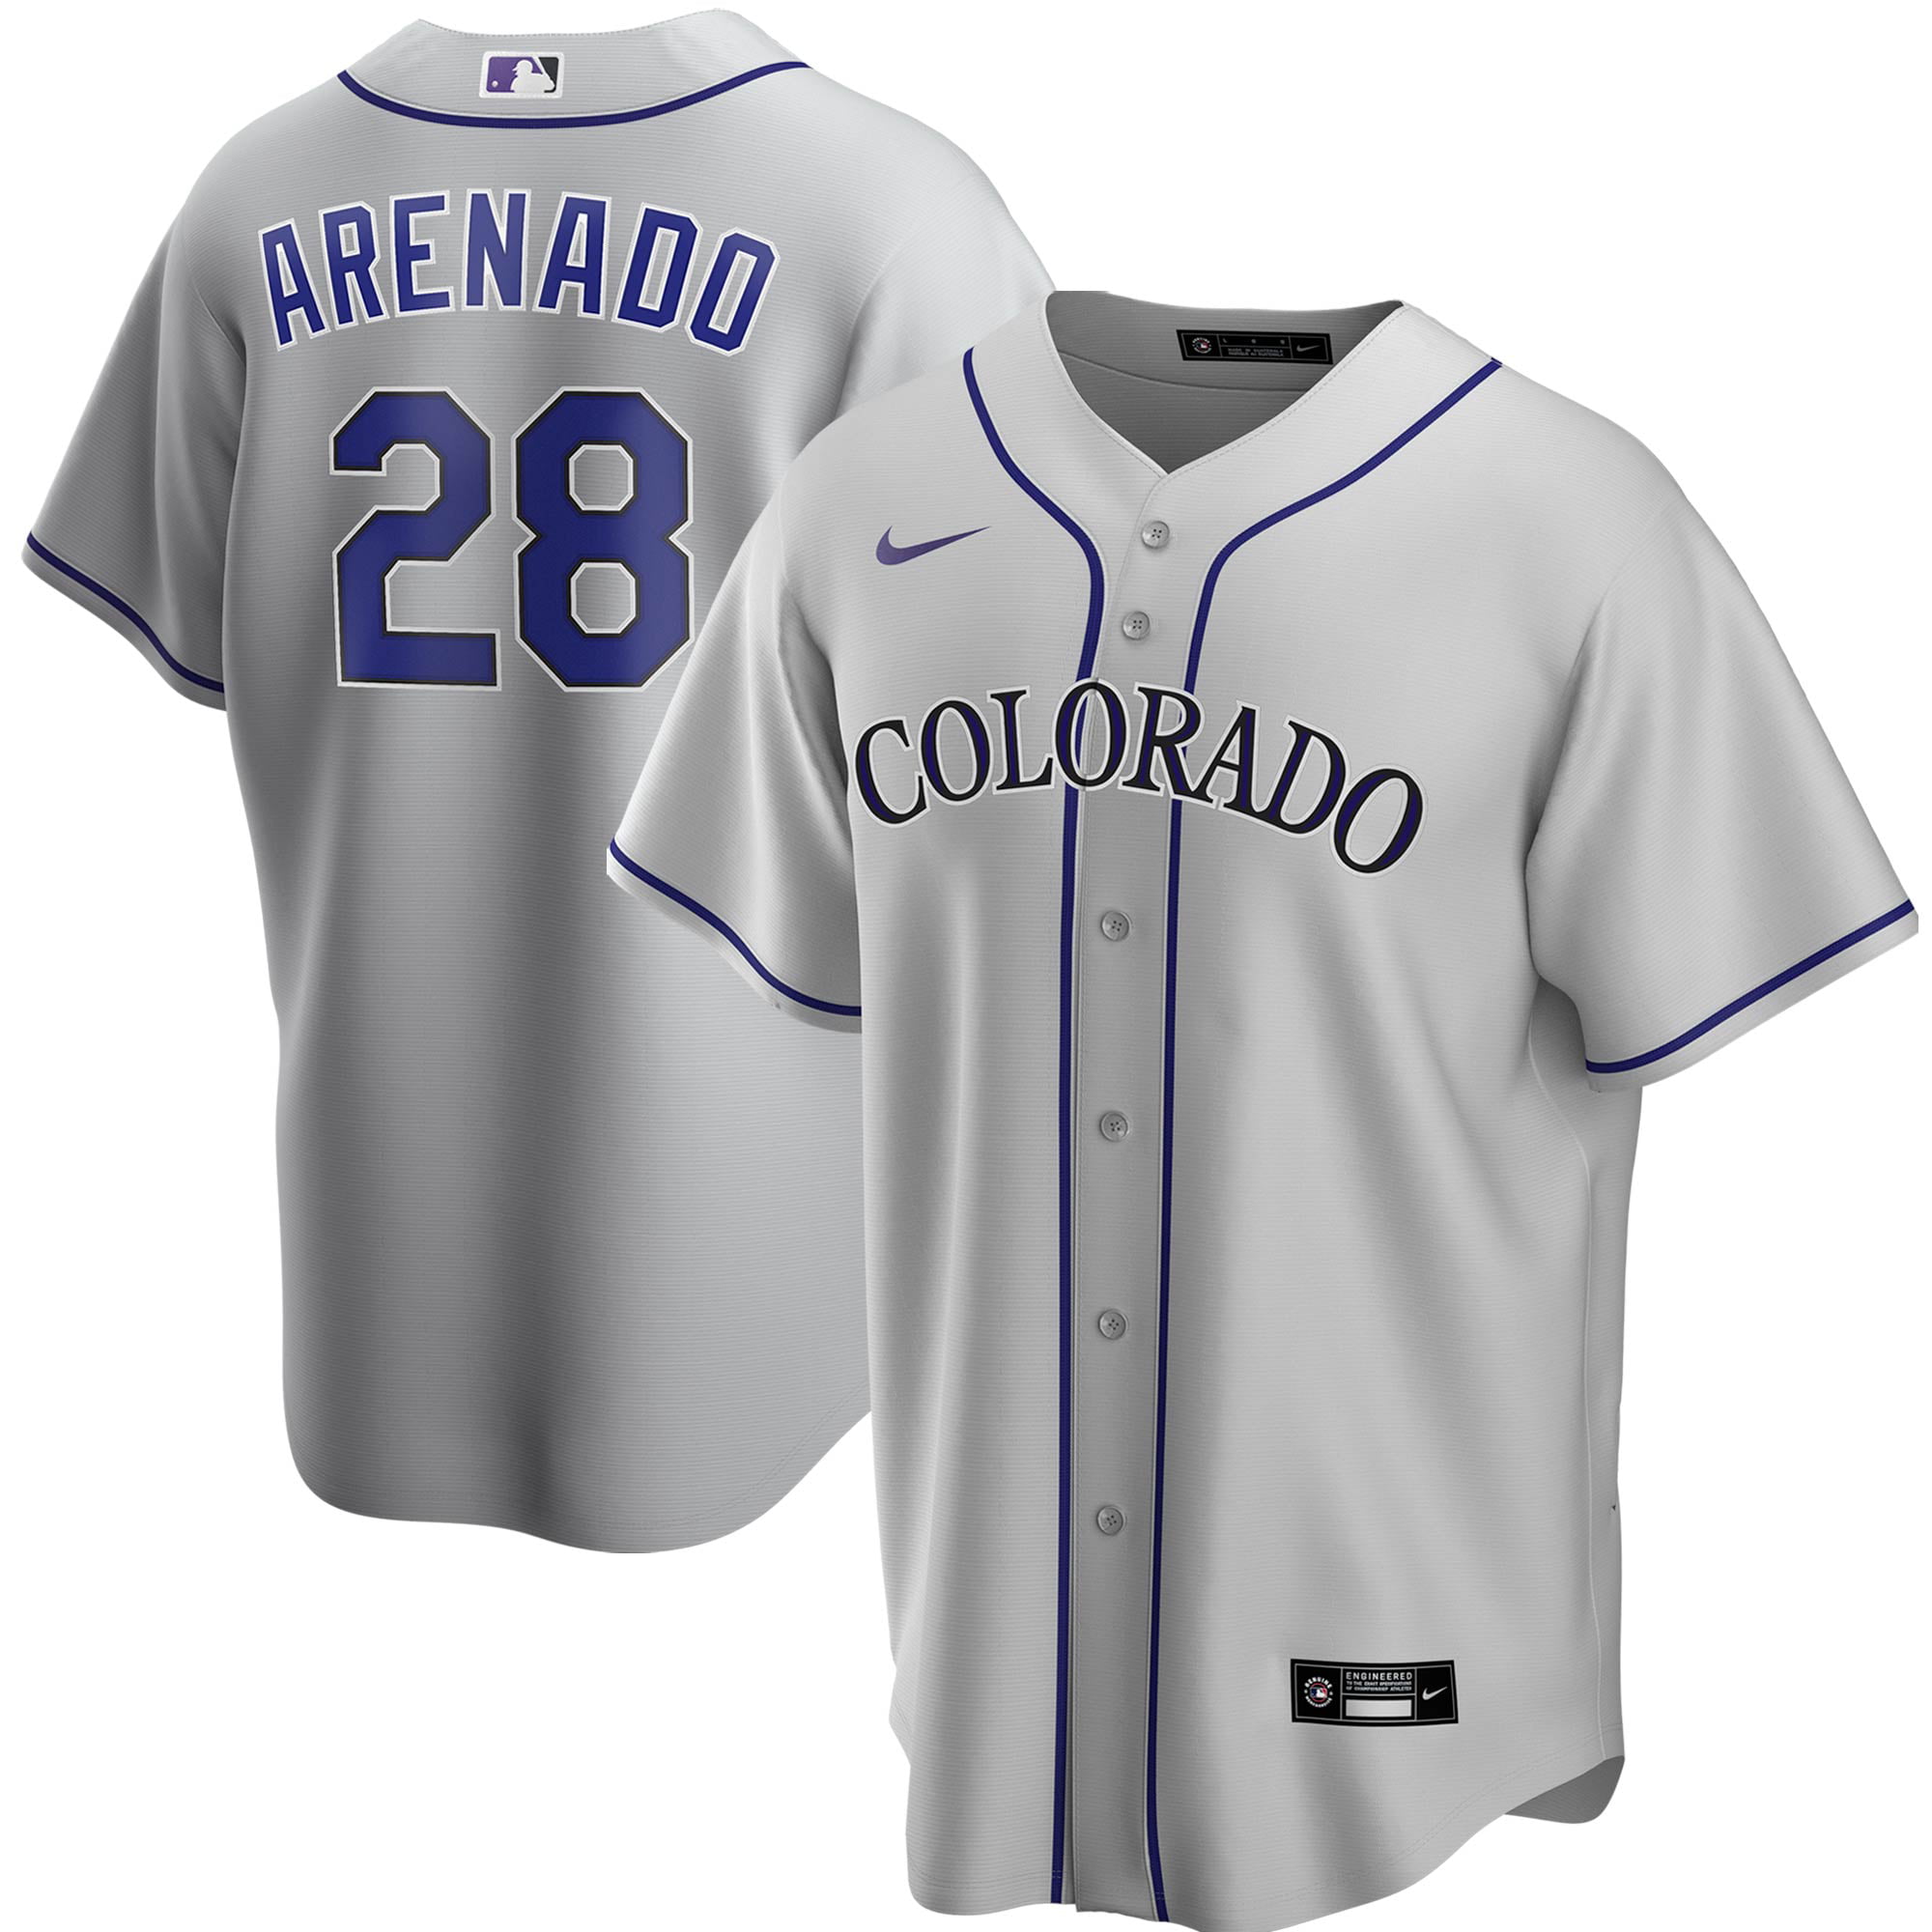 colorado rockies new uniforms 2020